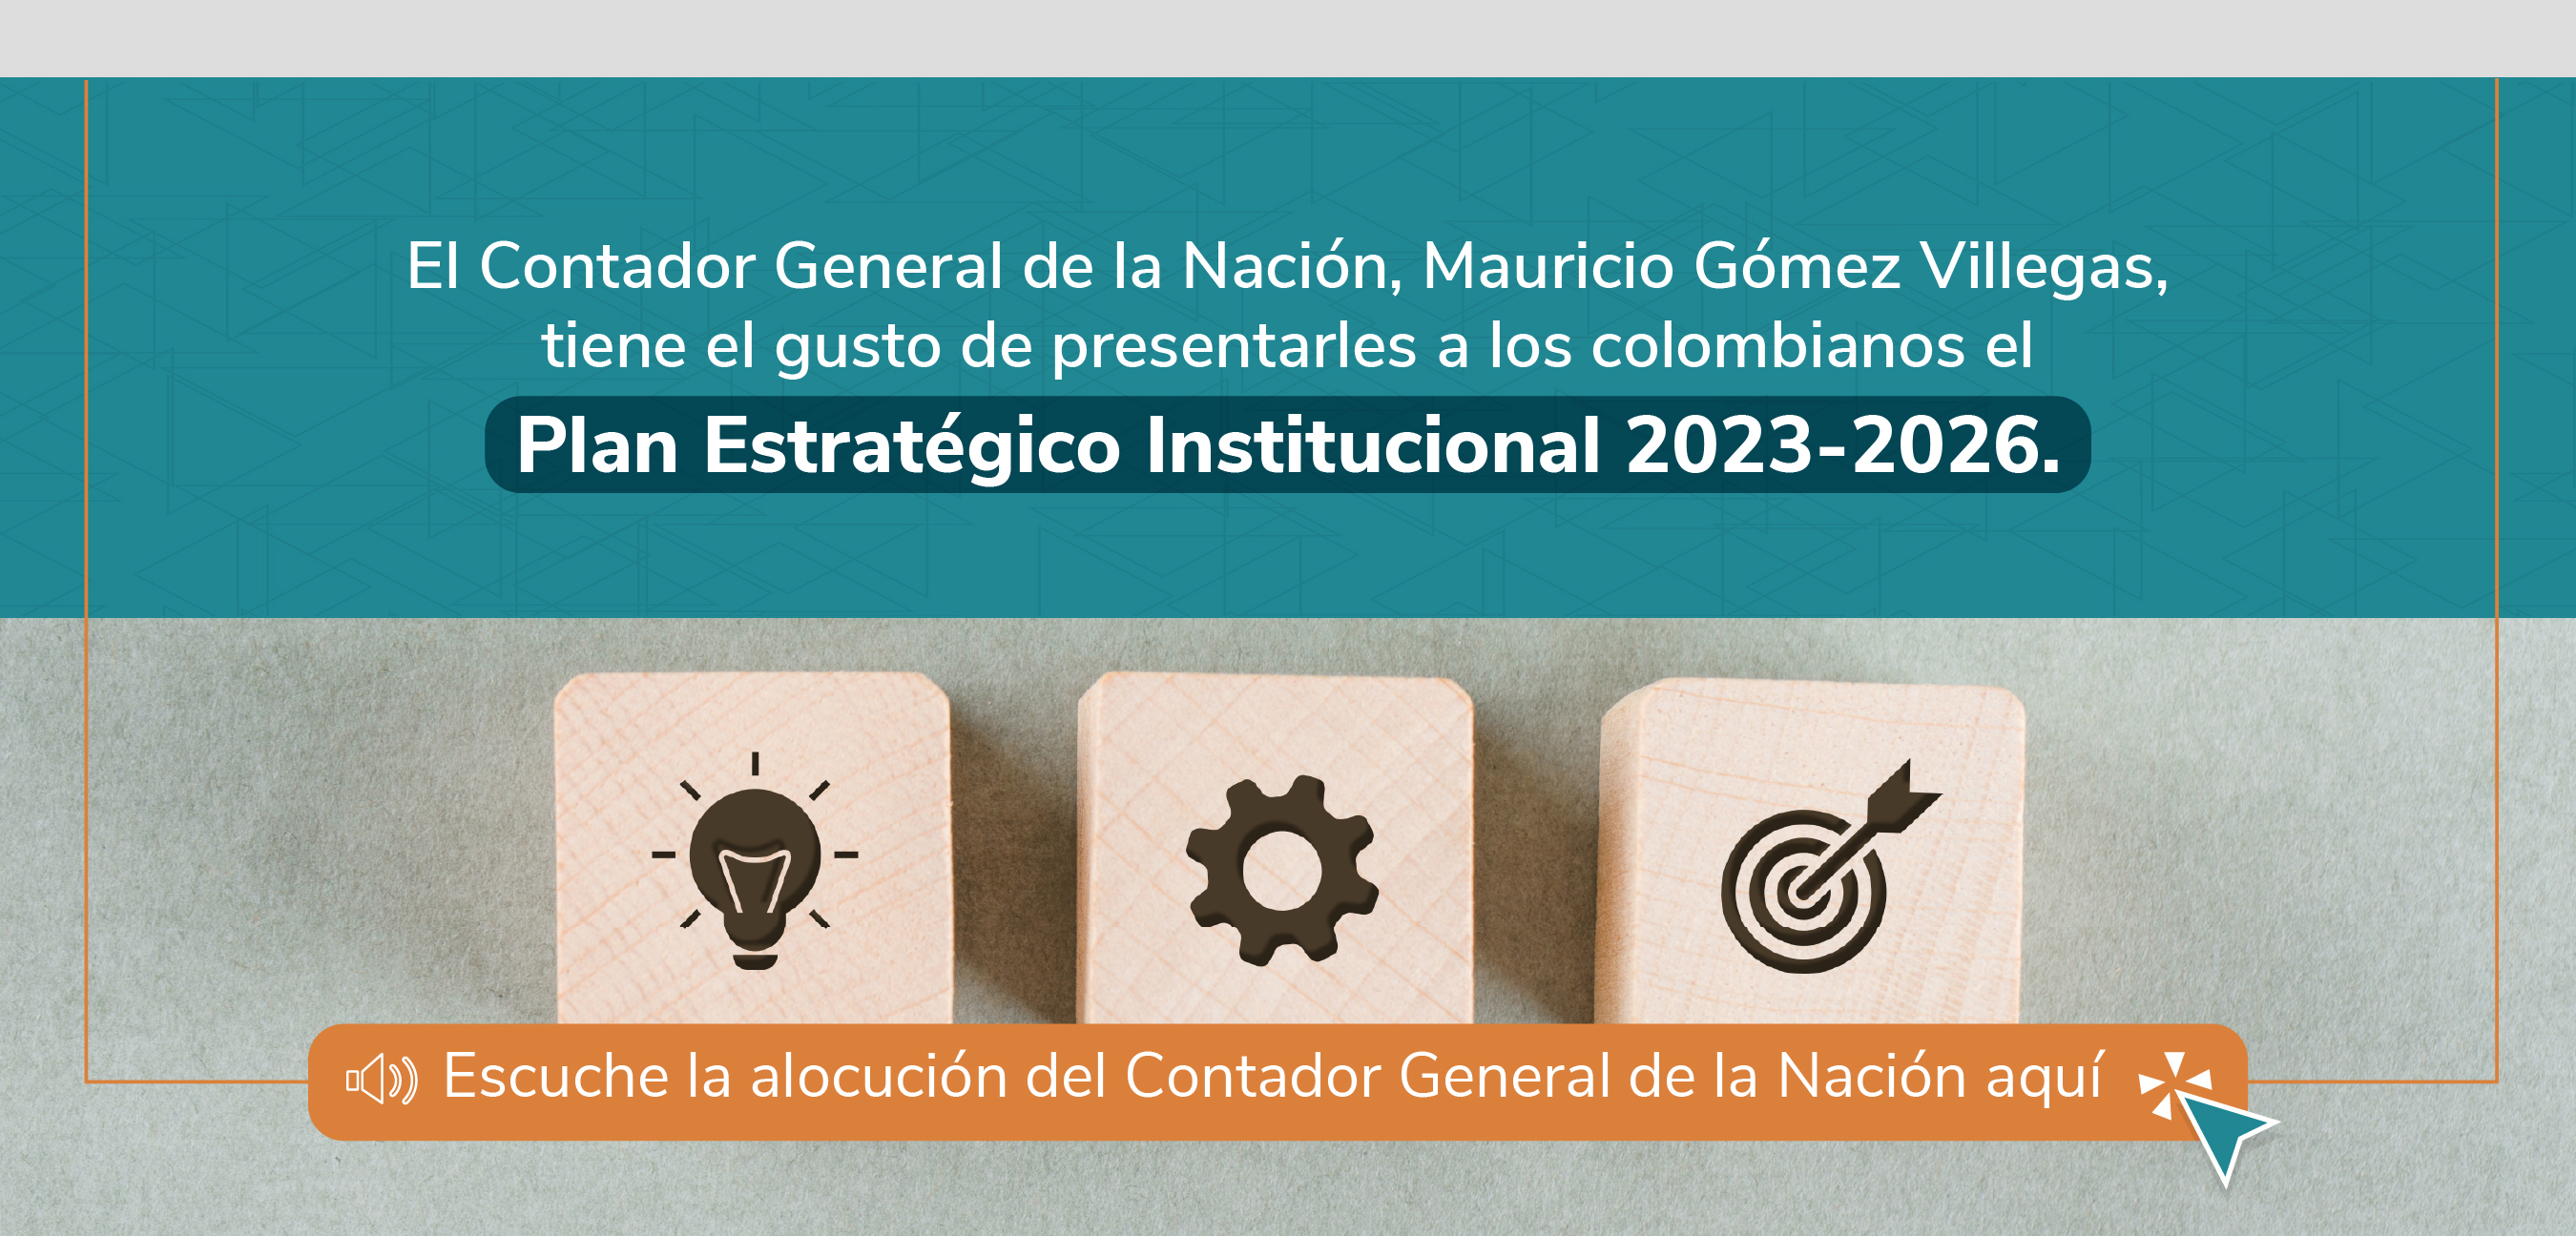 Alocución del Contador General de la Nación sobre el nuevo Plan Estratégico Institucional 2023-2026